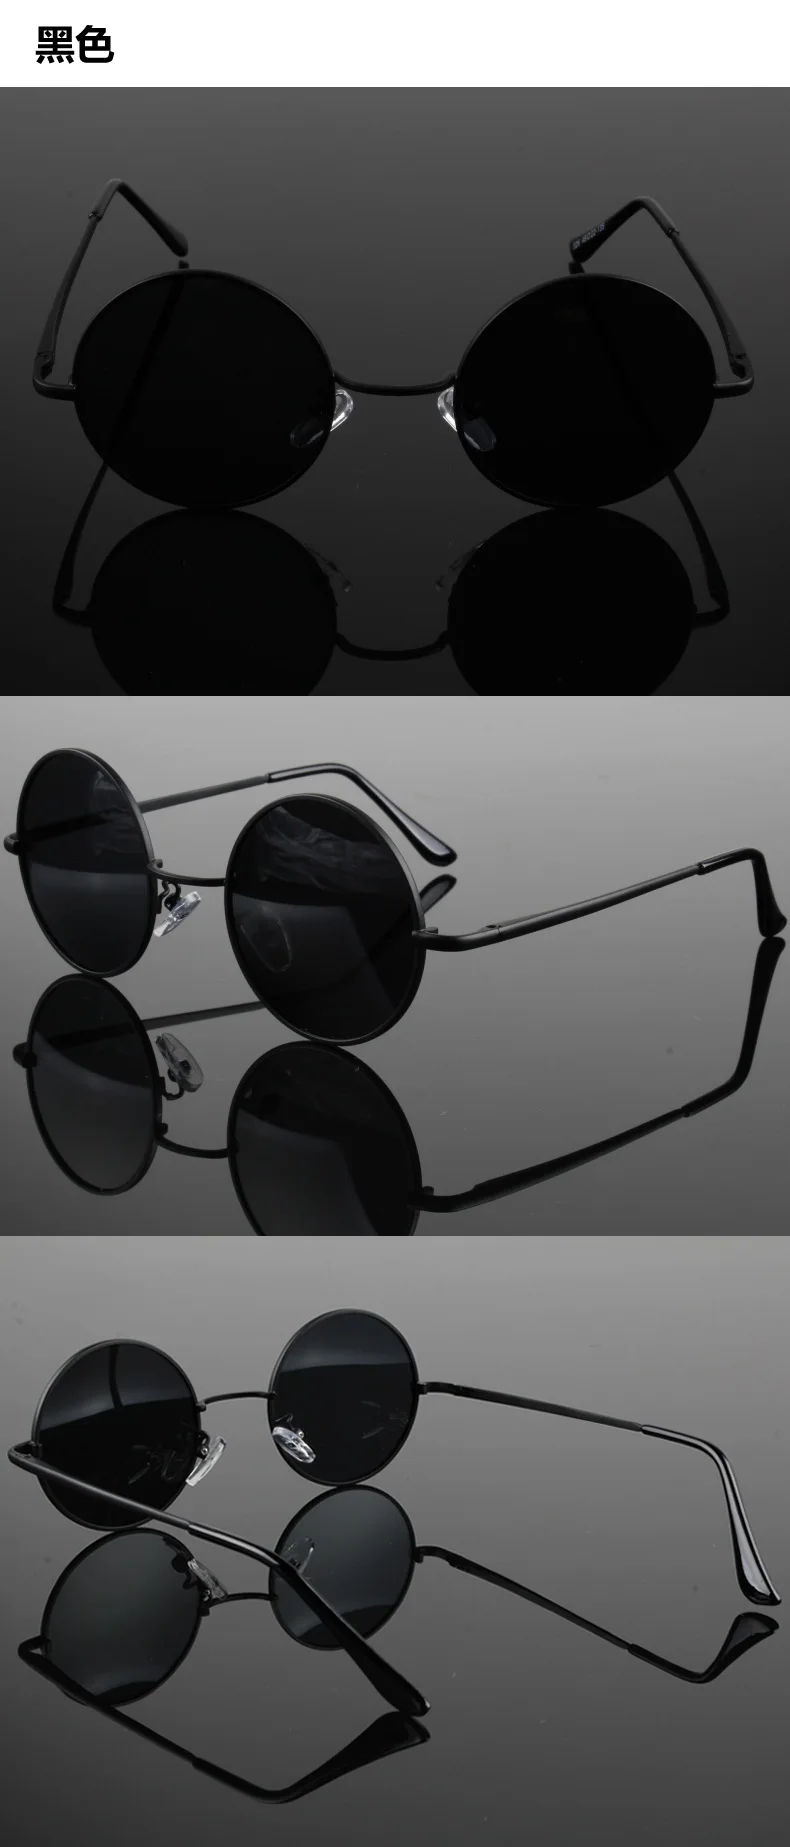 JAXIN, Ретро стиль, поляризационные круглые солнцезащитные очки, мужские, черные, классические, солнцезащитные очки, женские, фирменный дизайн, для путешествий, металлическая оправа, очки, UV400 okulary